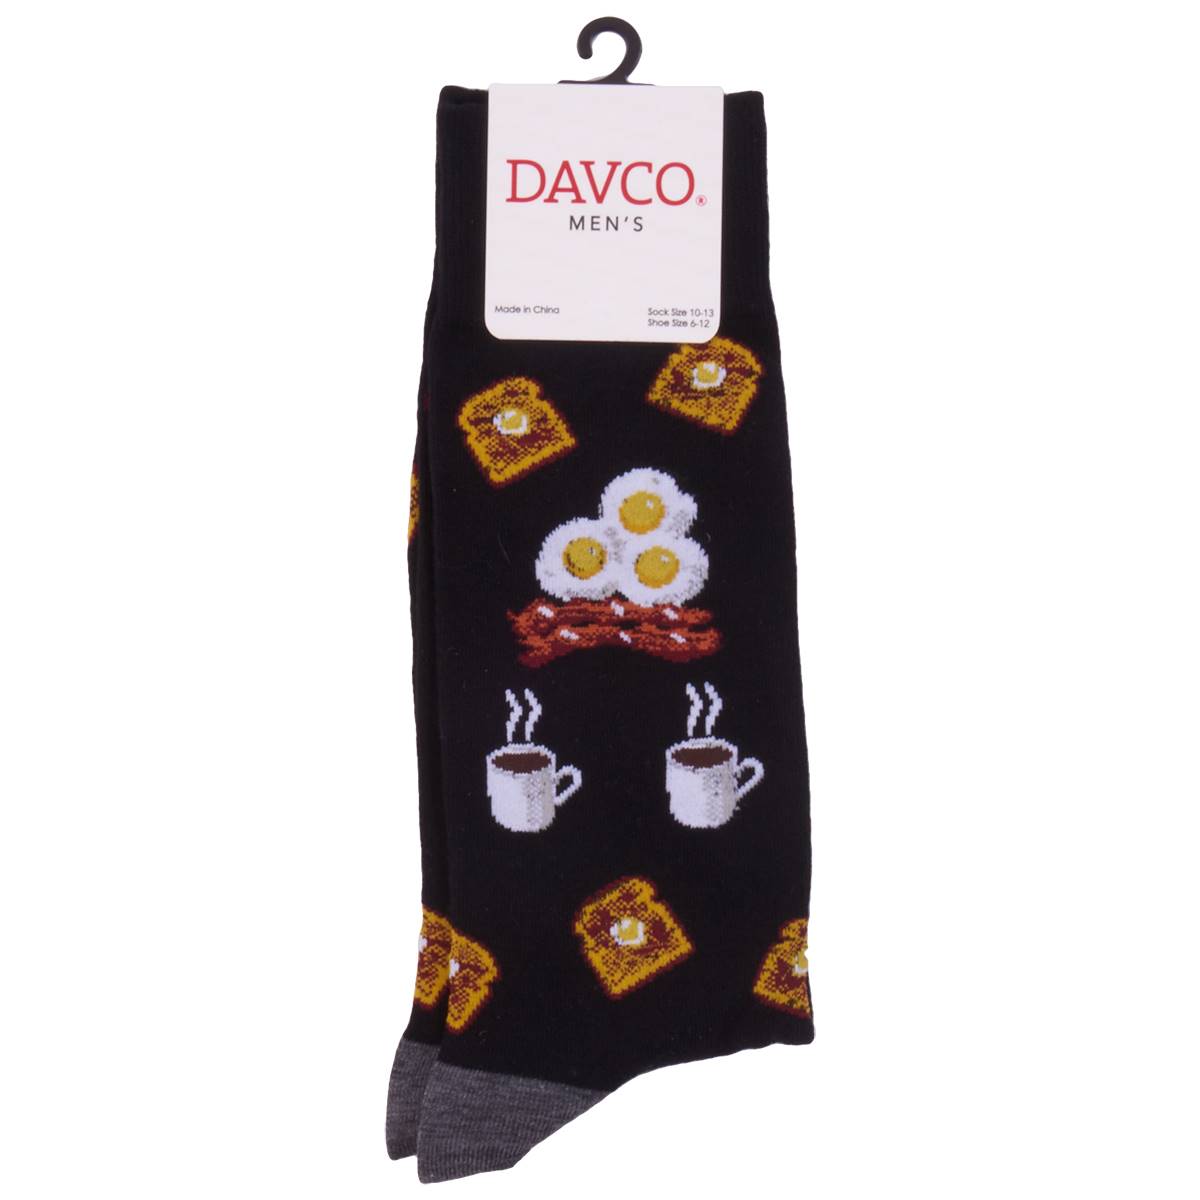 Mens Davco Breakfast Socks